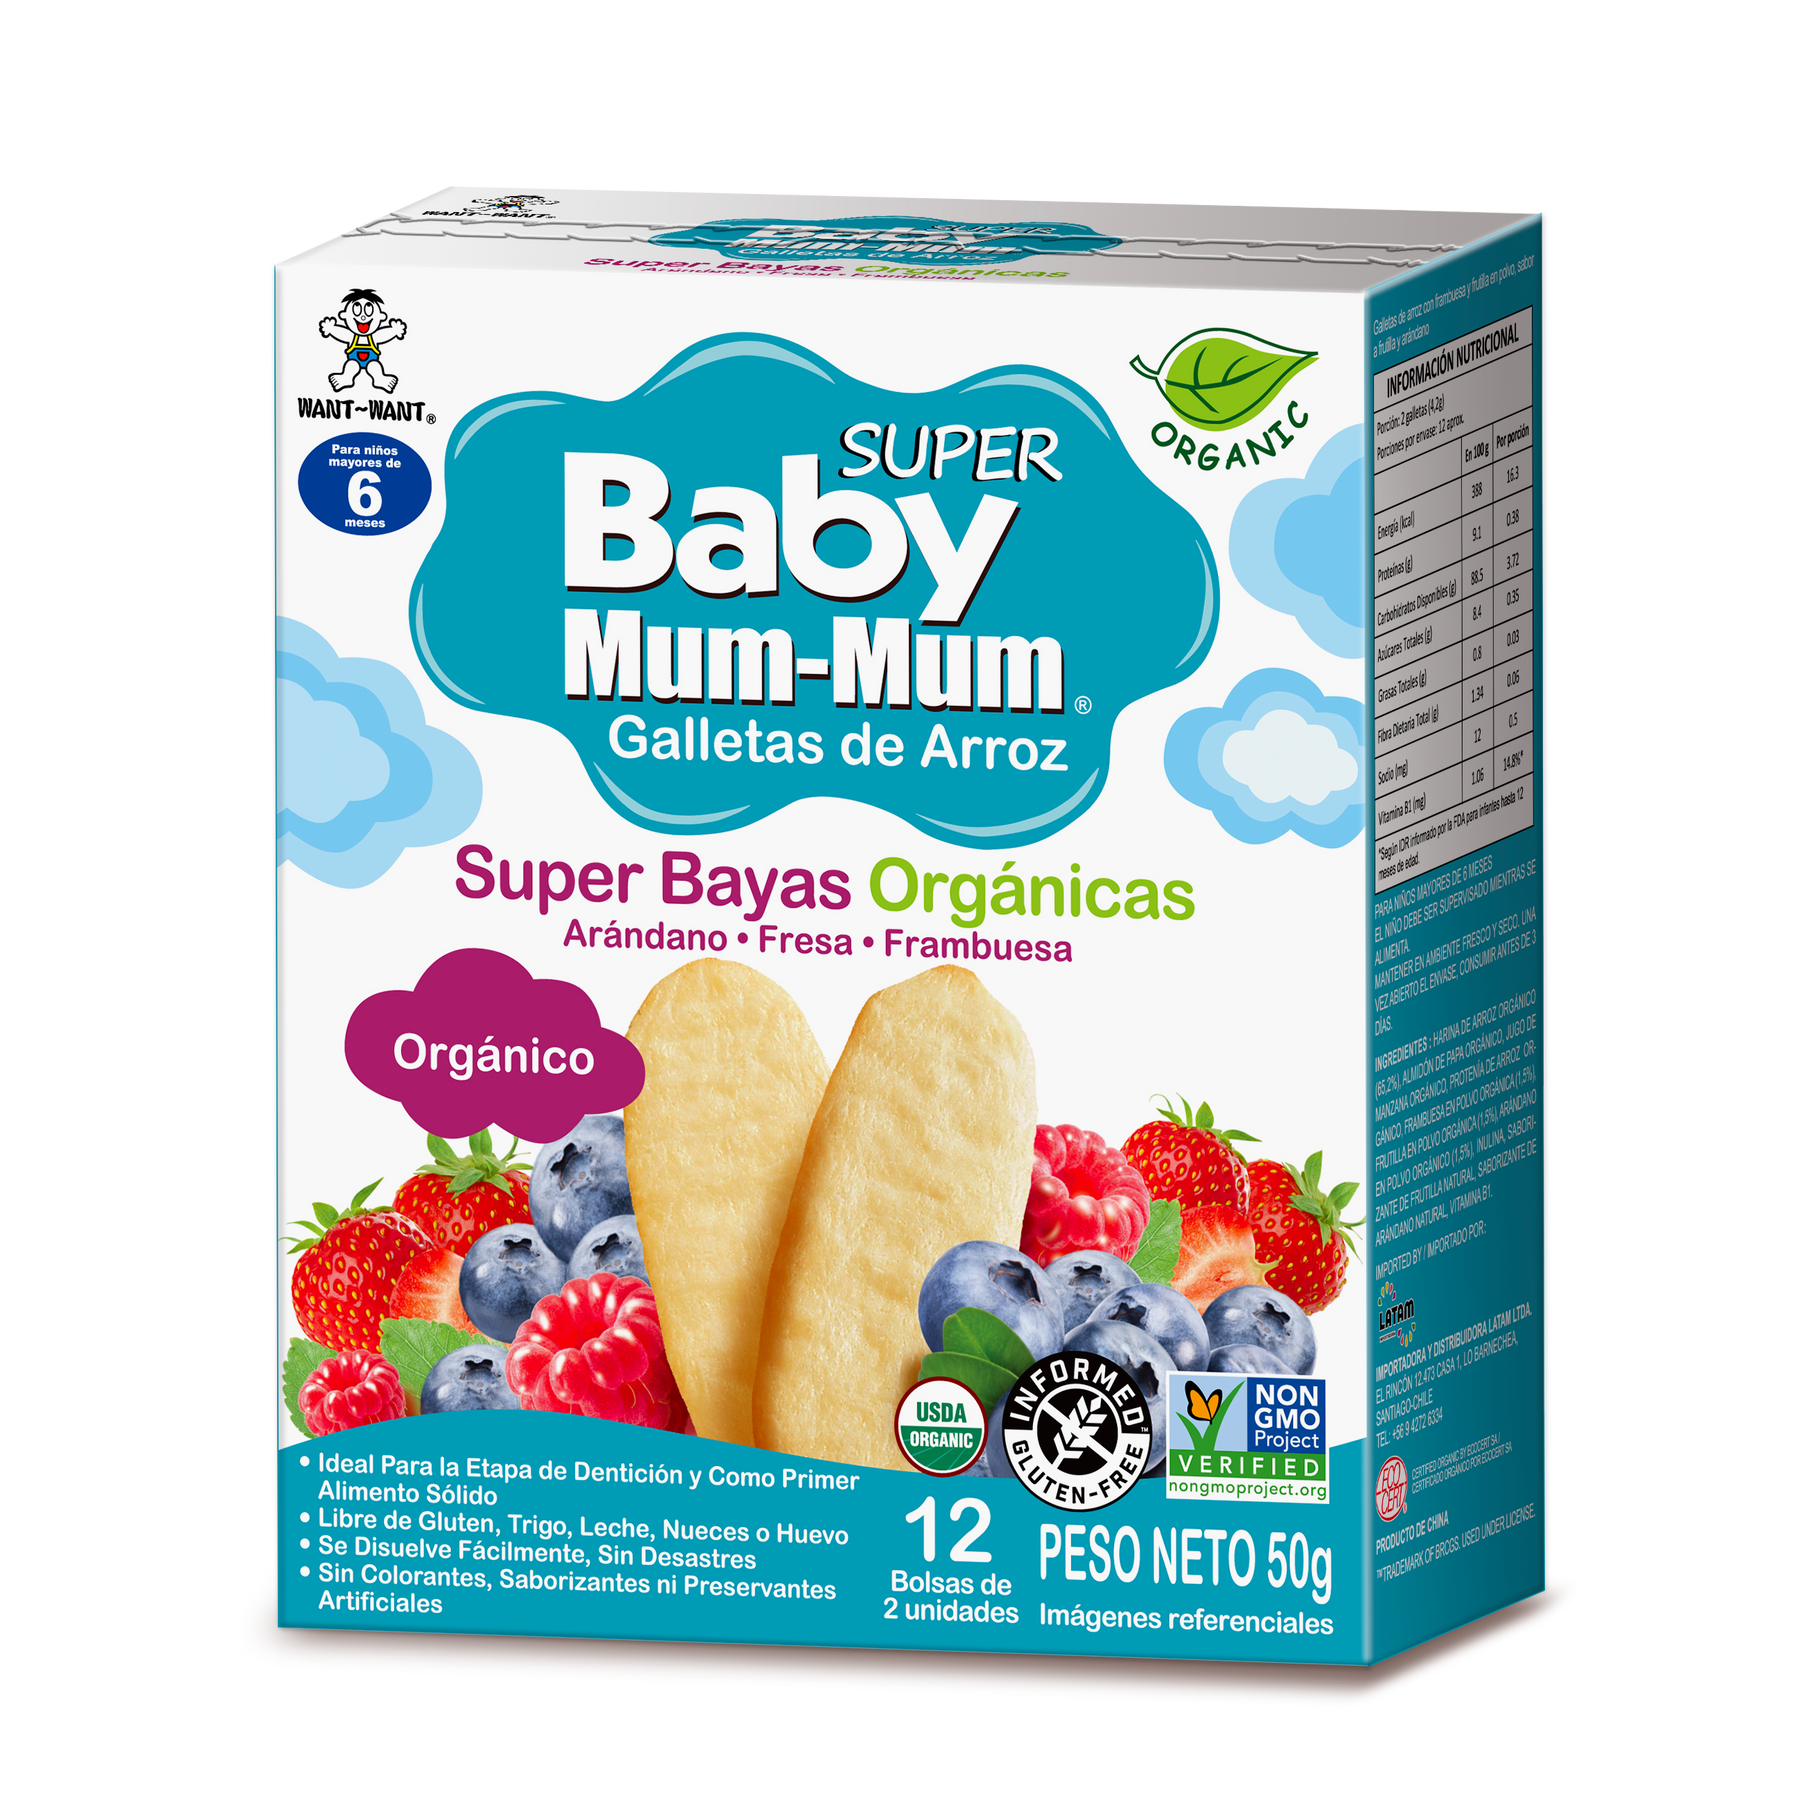 Mini barritas de fruta orgánicas para bebé Holle Baby Food - Biobebé